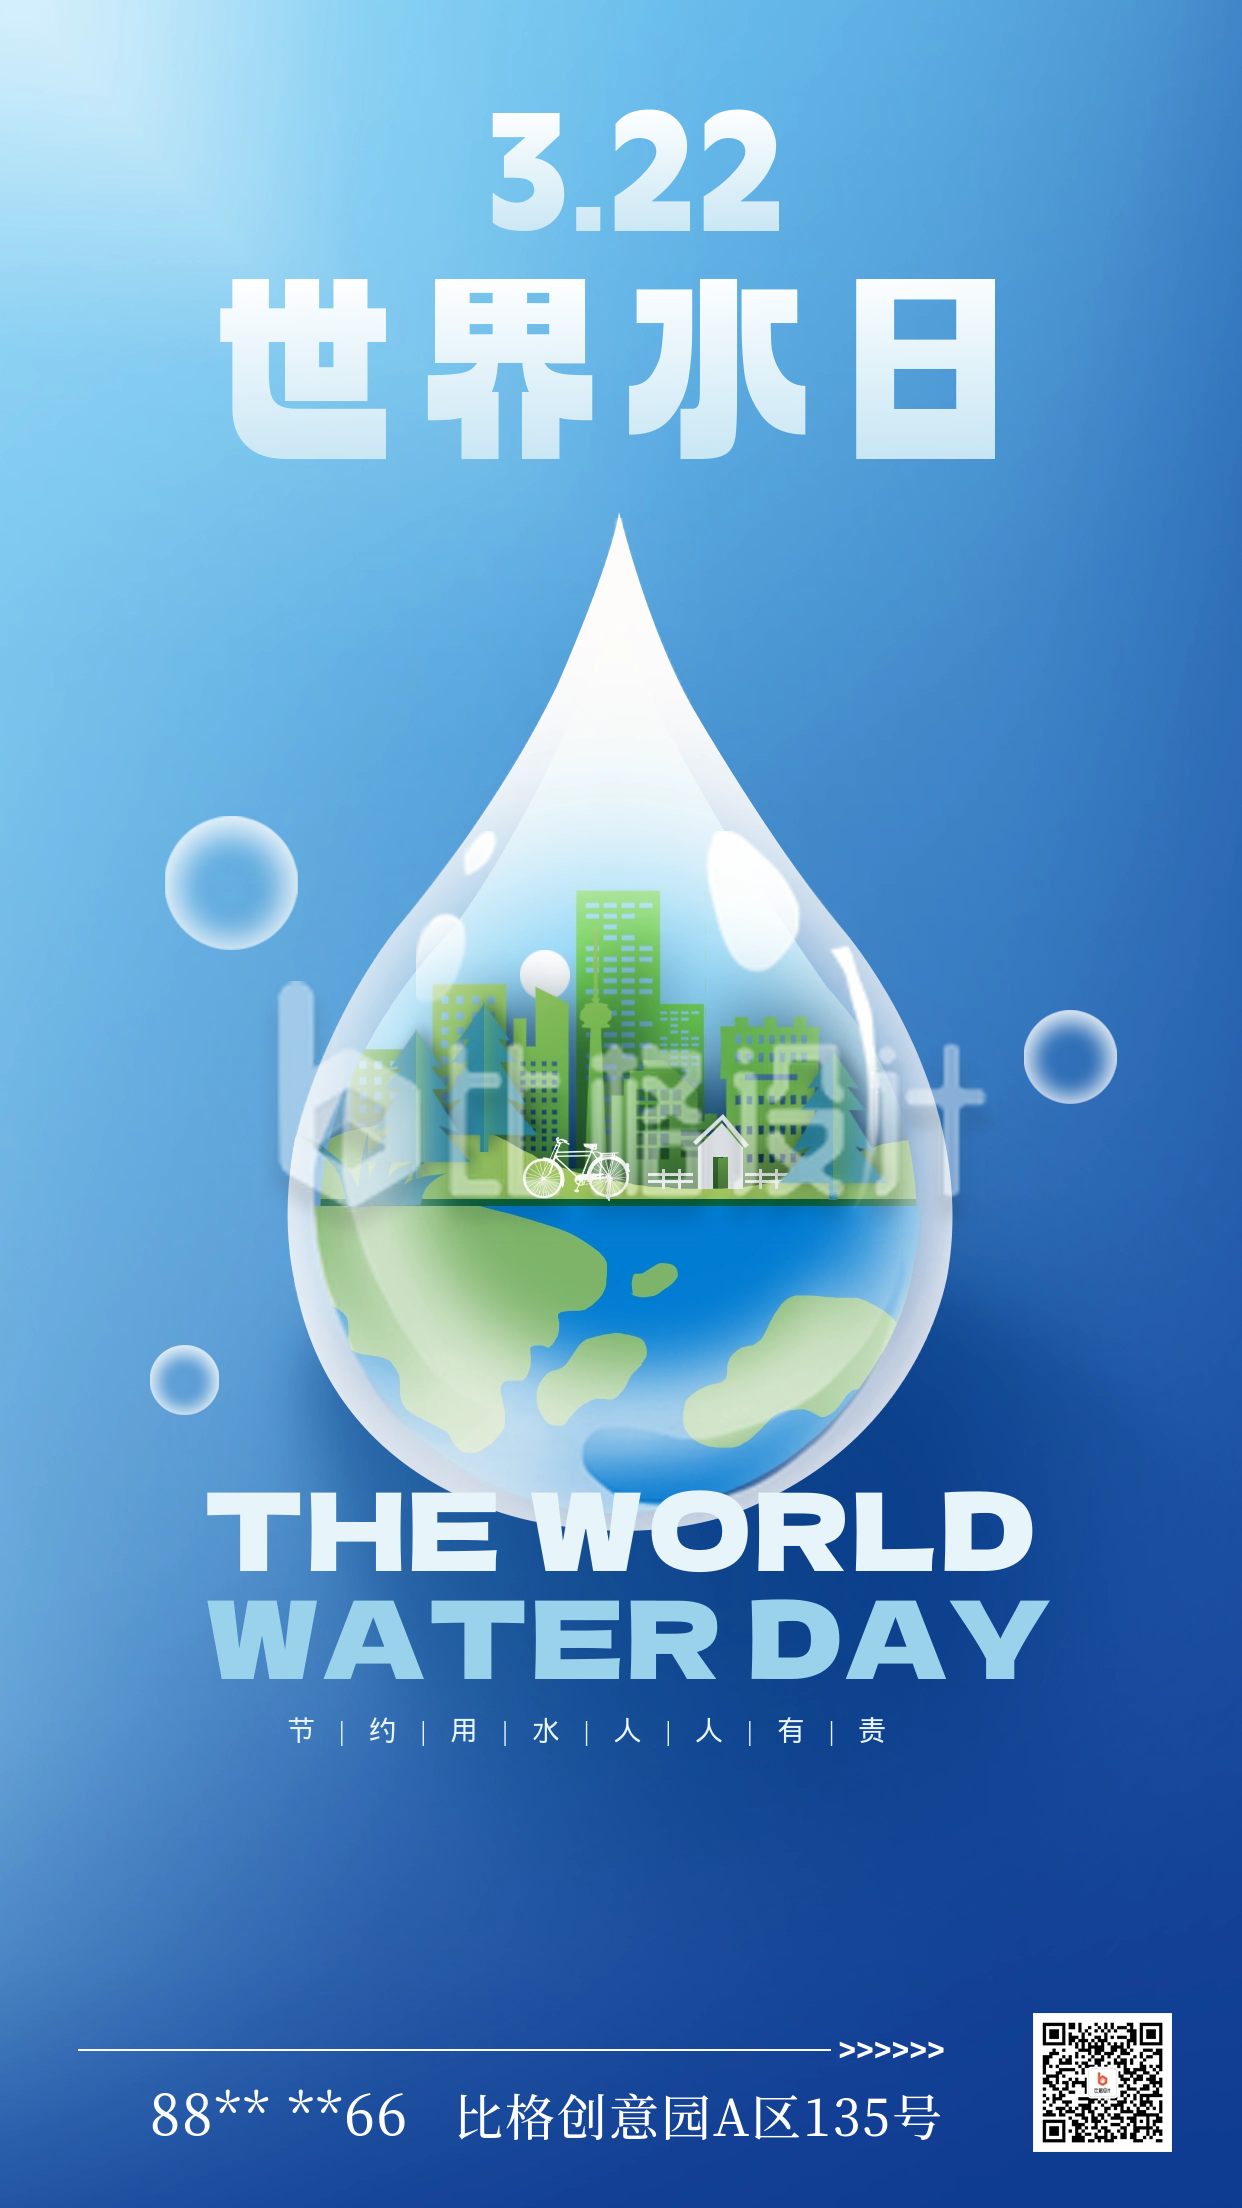 蓝色世界水日宣传海报